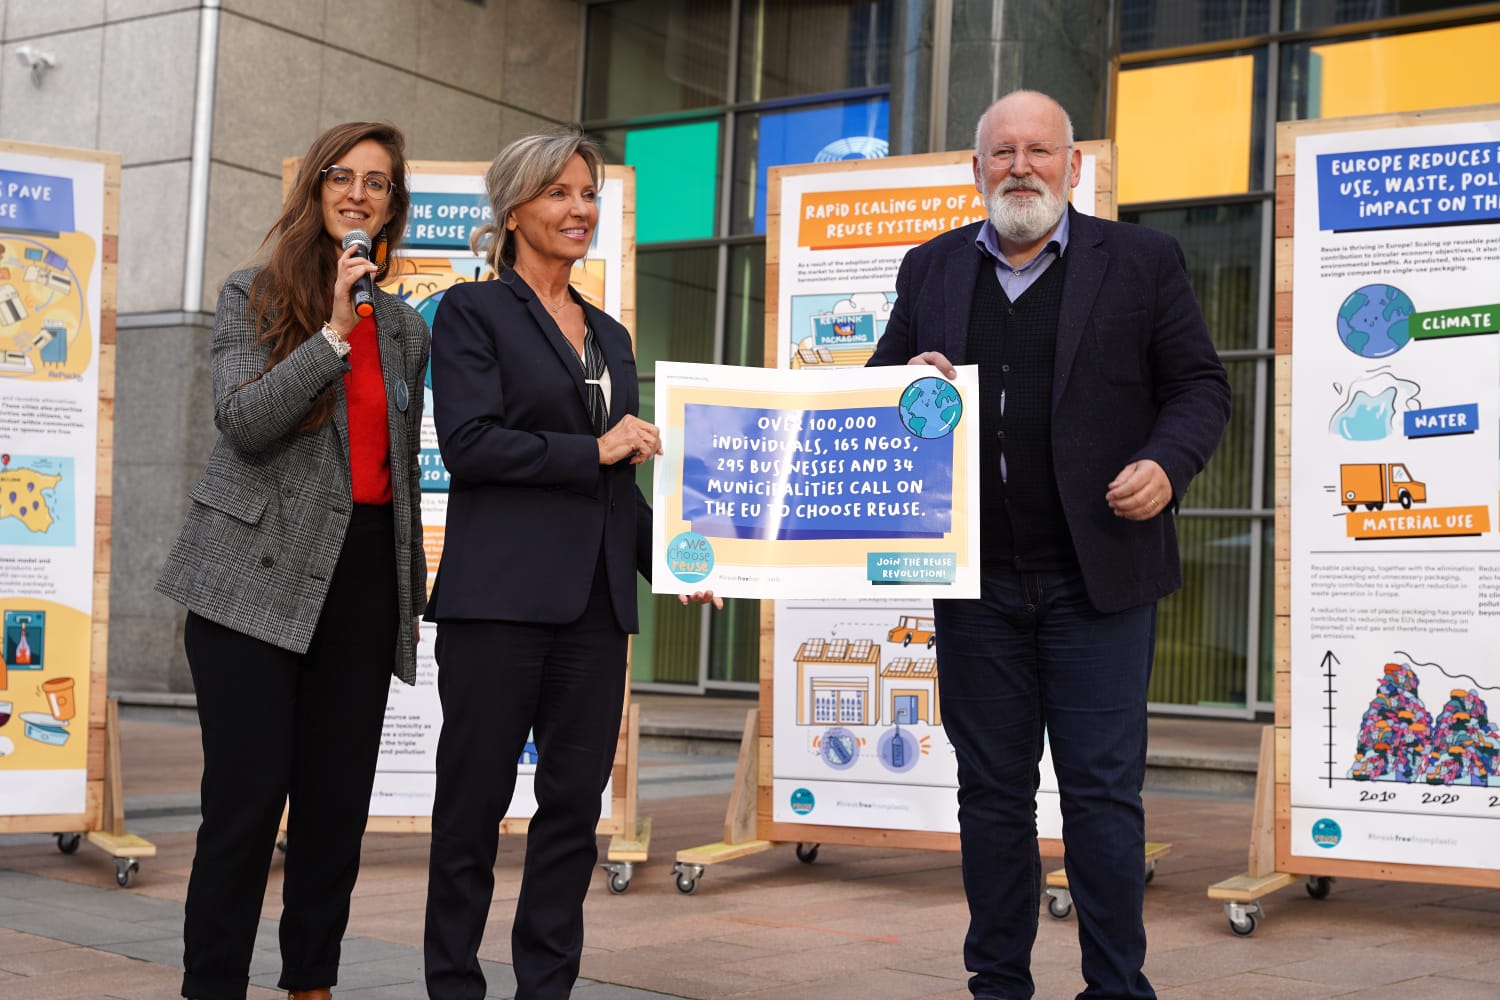 A photo of BFFP European Coordinator Delphine Lévi Alvarès at the #WeChooseReuse signature handover with European Commission Vice President Frans Timmermans and Member of European Parlament Fréderique Ries.